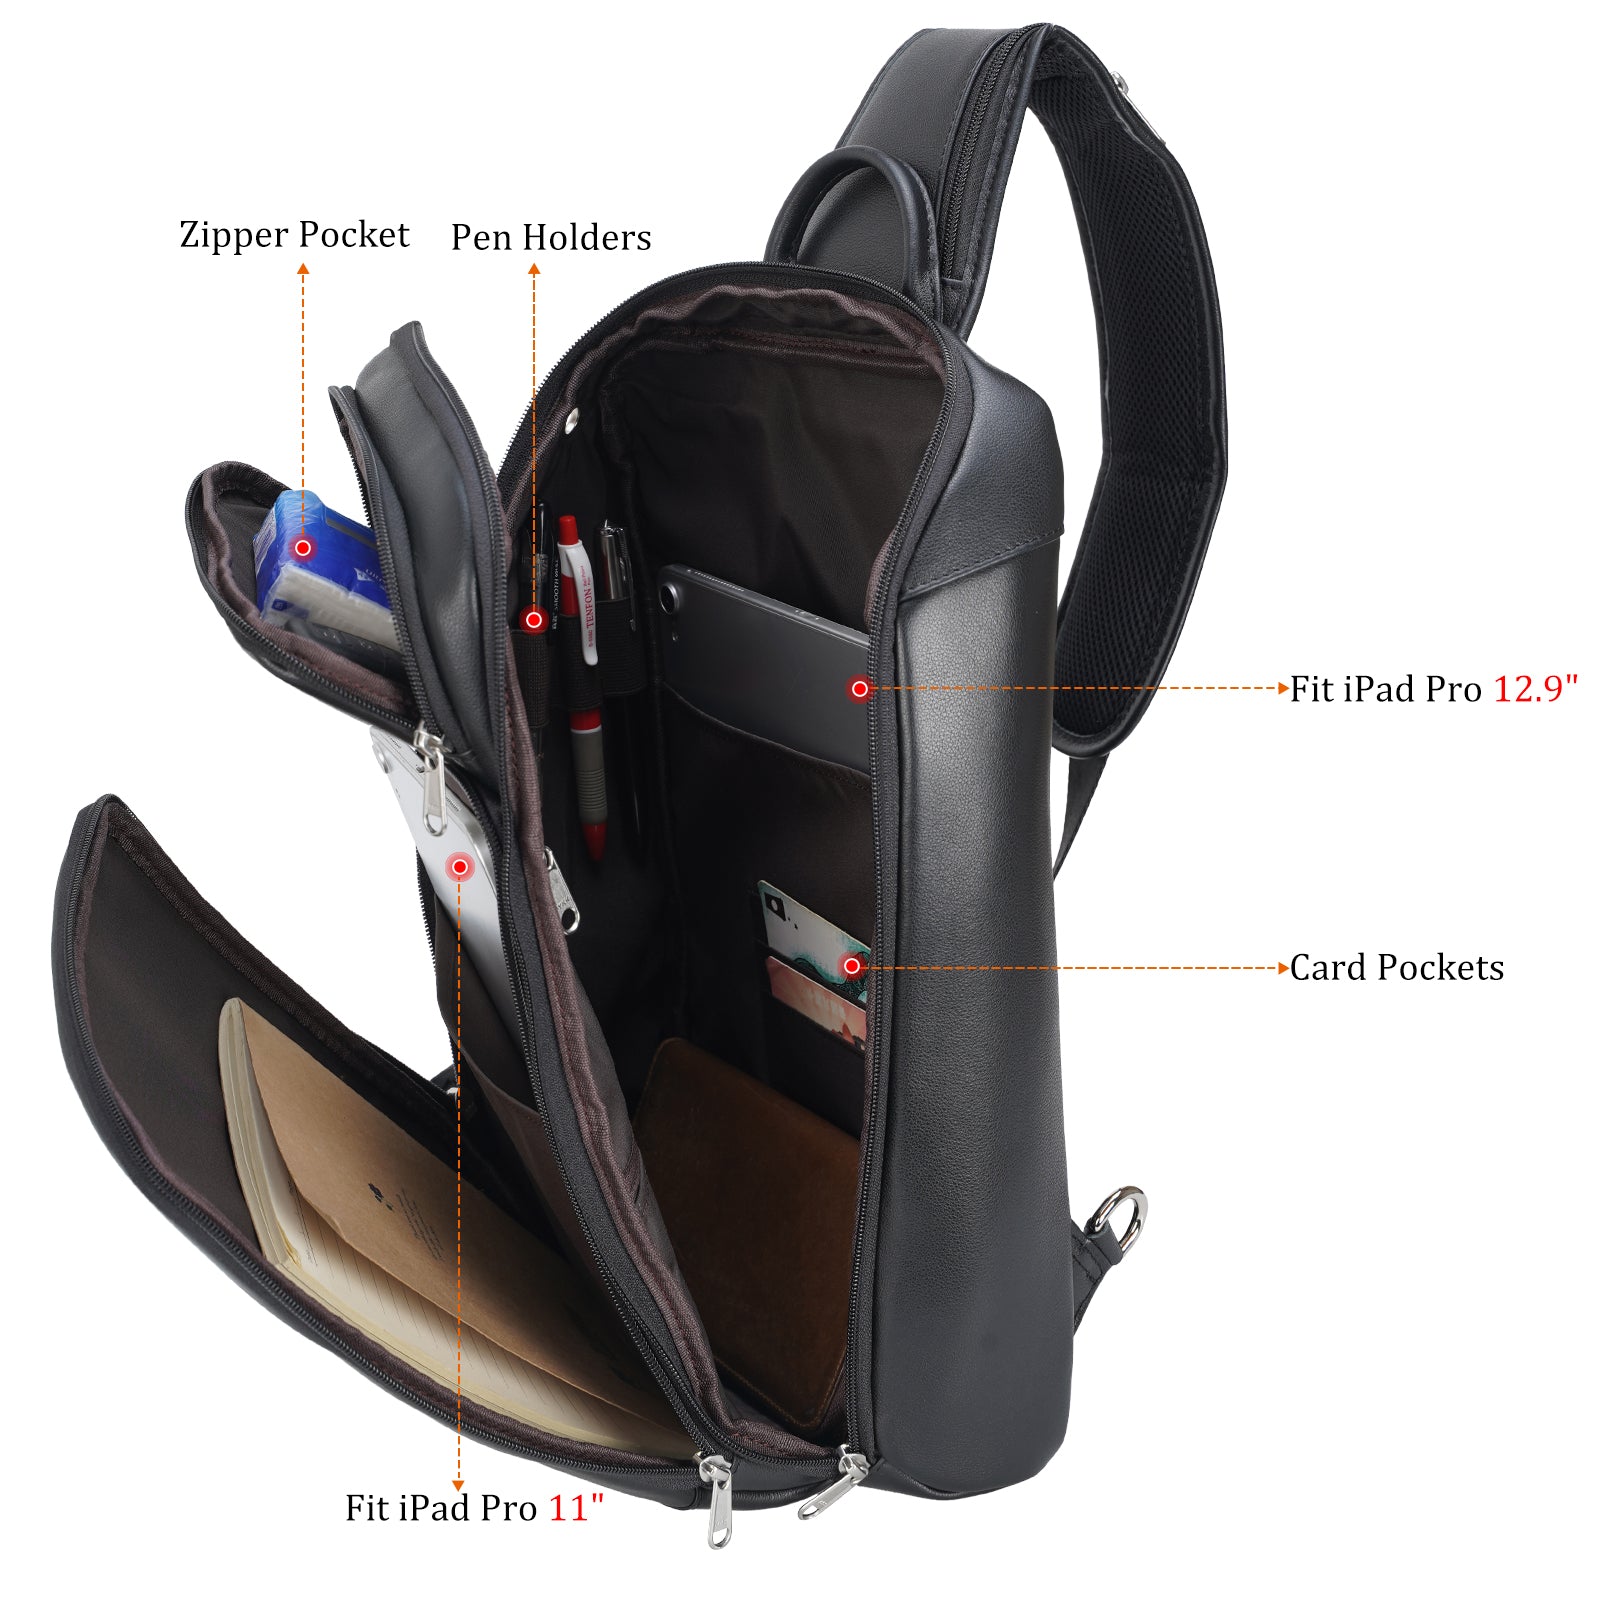 Polare Modern Style Sling Shoulder Bag Men's Travel/Hiking Daypack wit